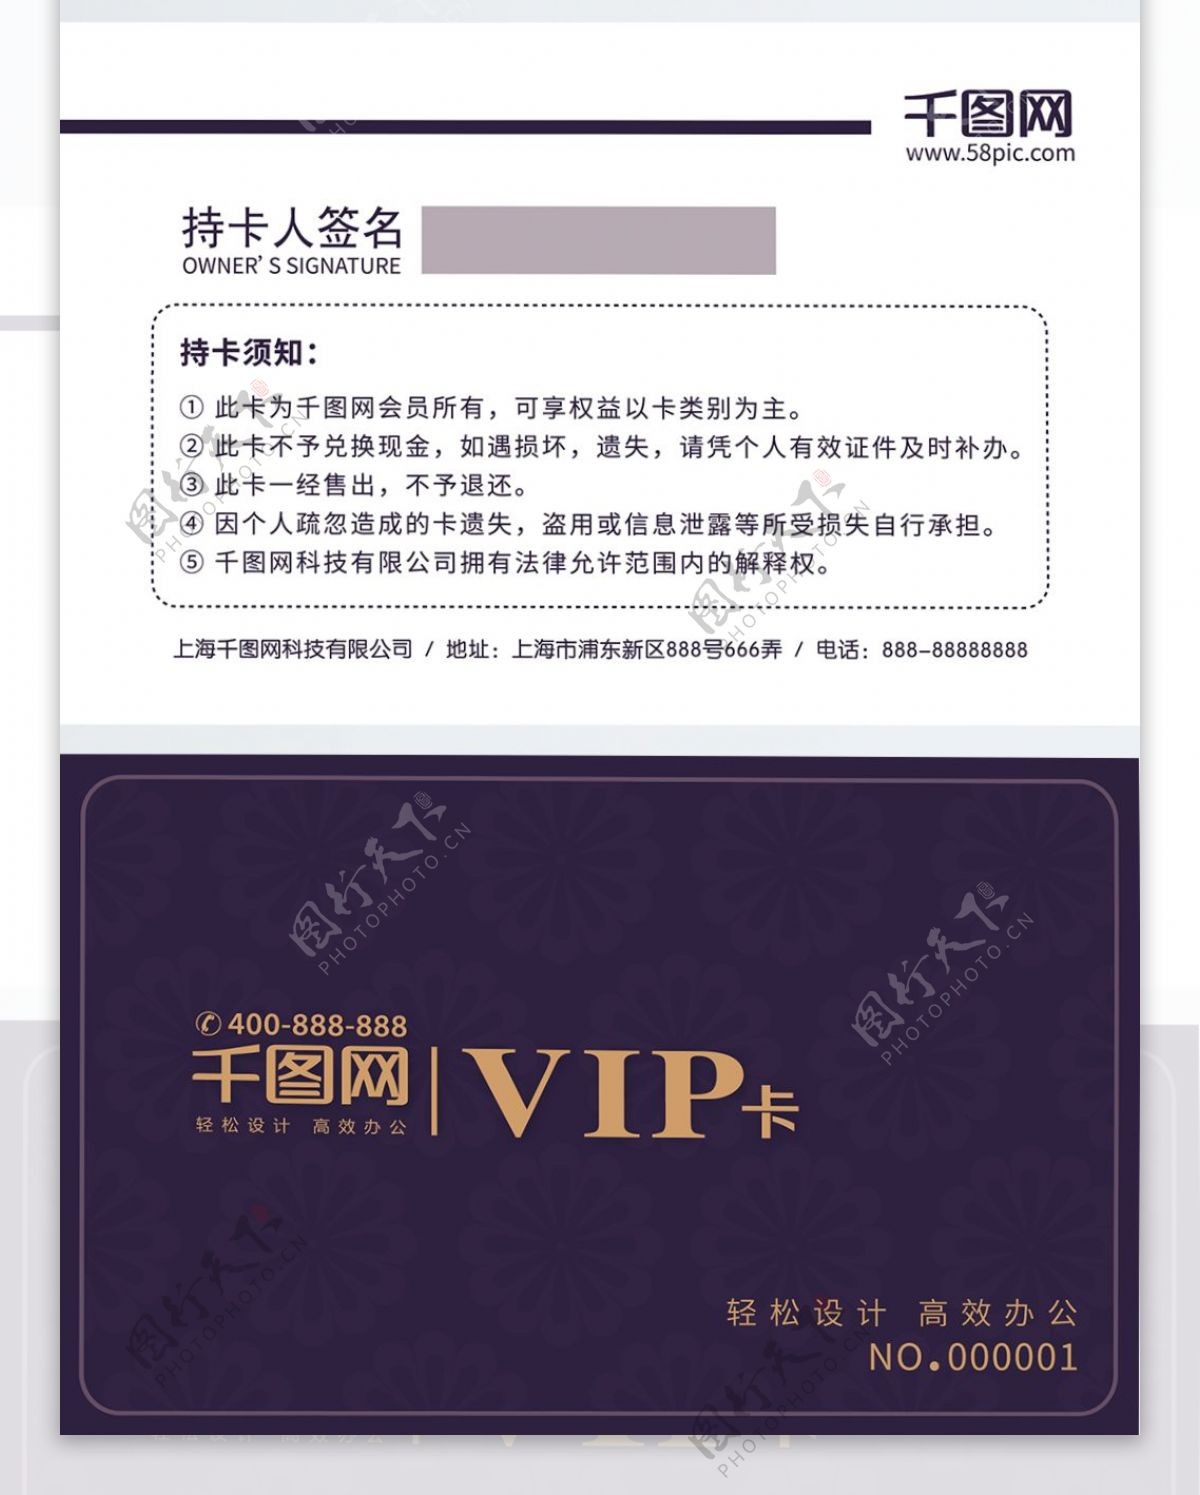 简约大气紫色VIP会员卡设计模板